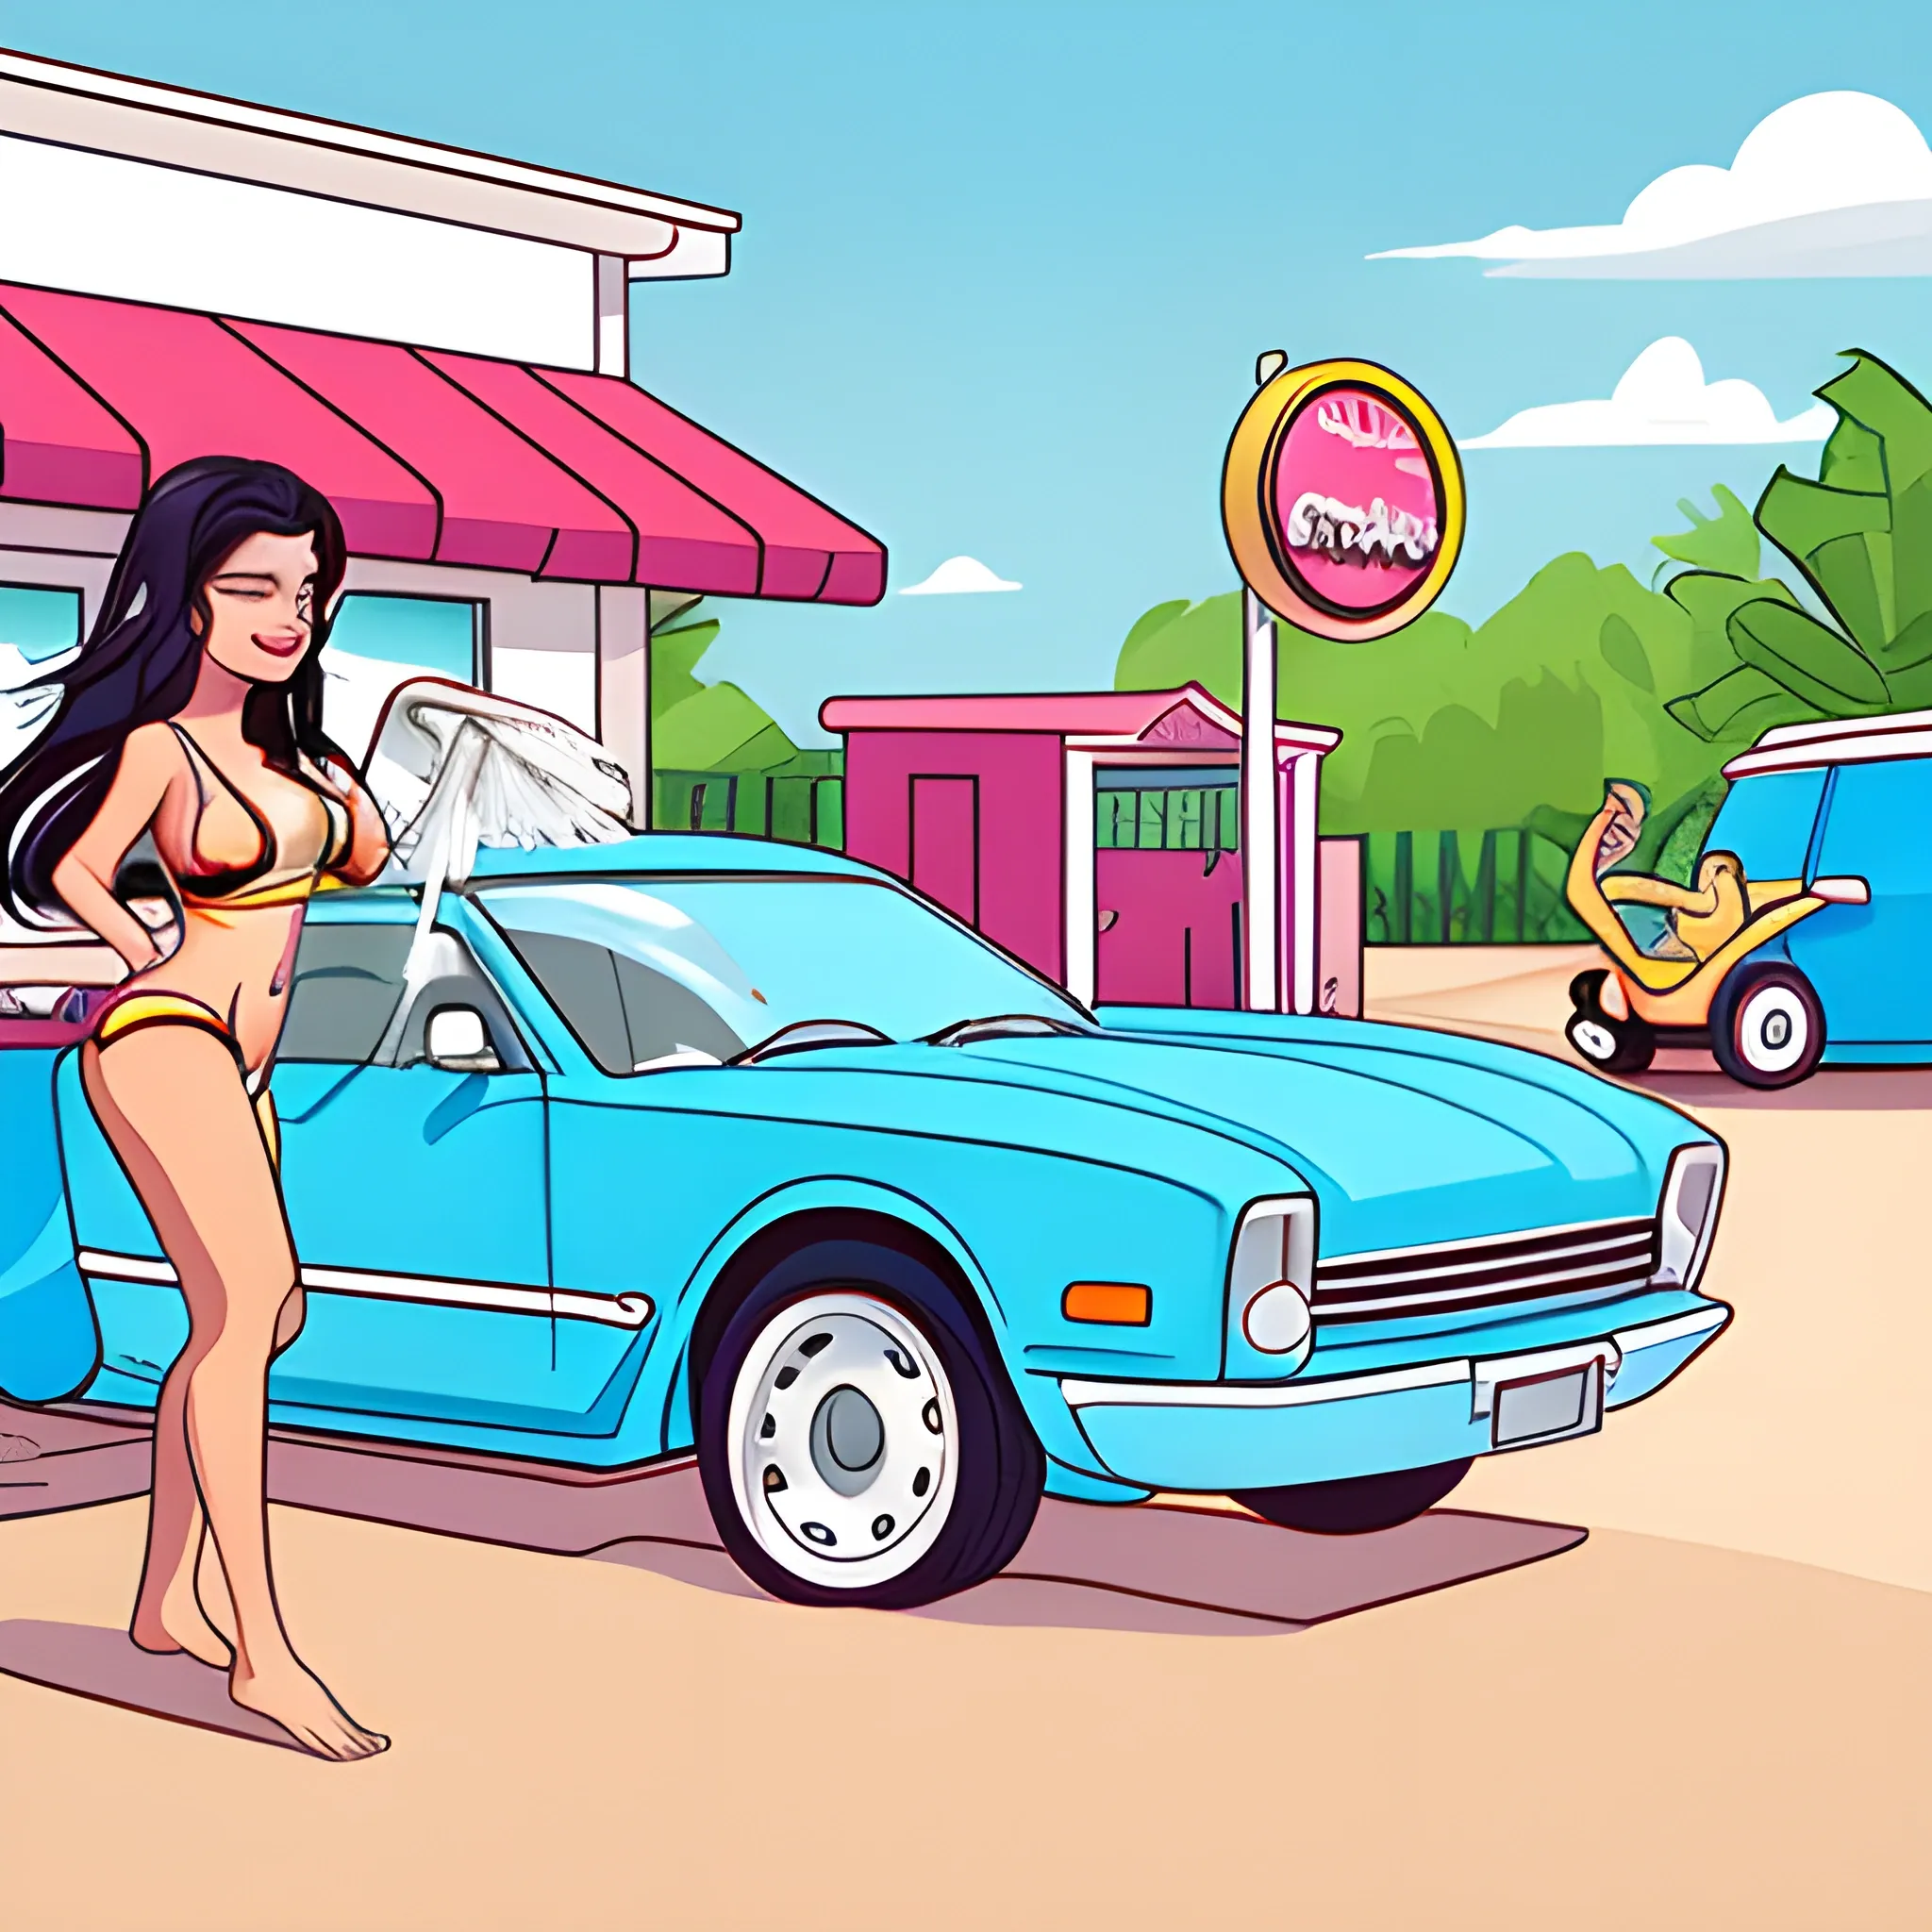 Bikini car wash, illustration 